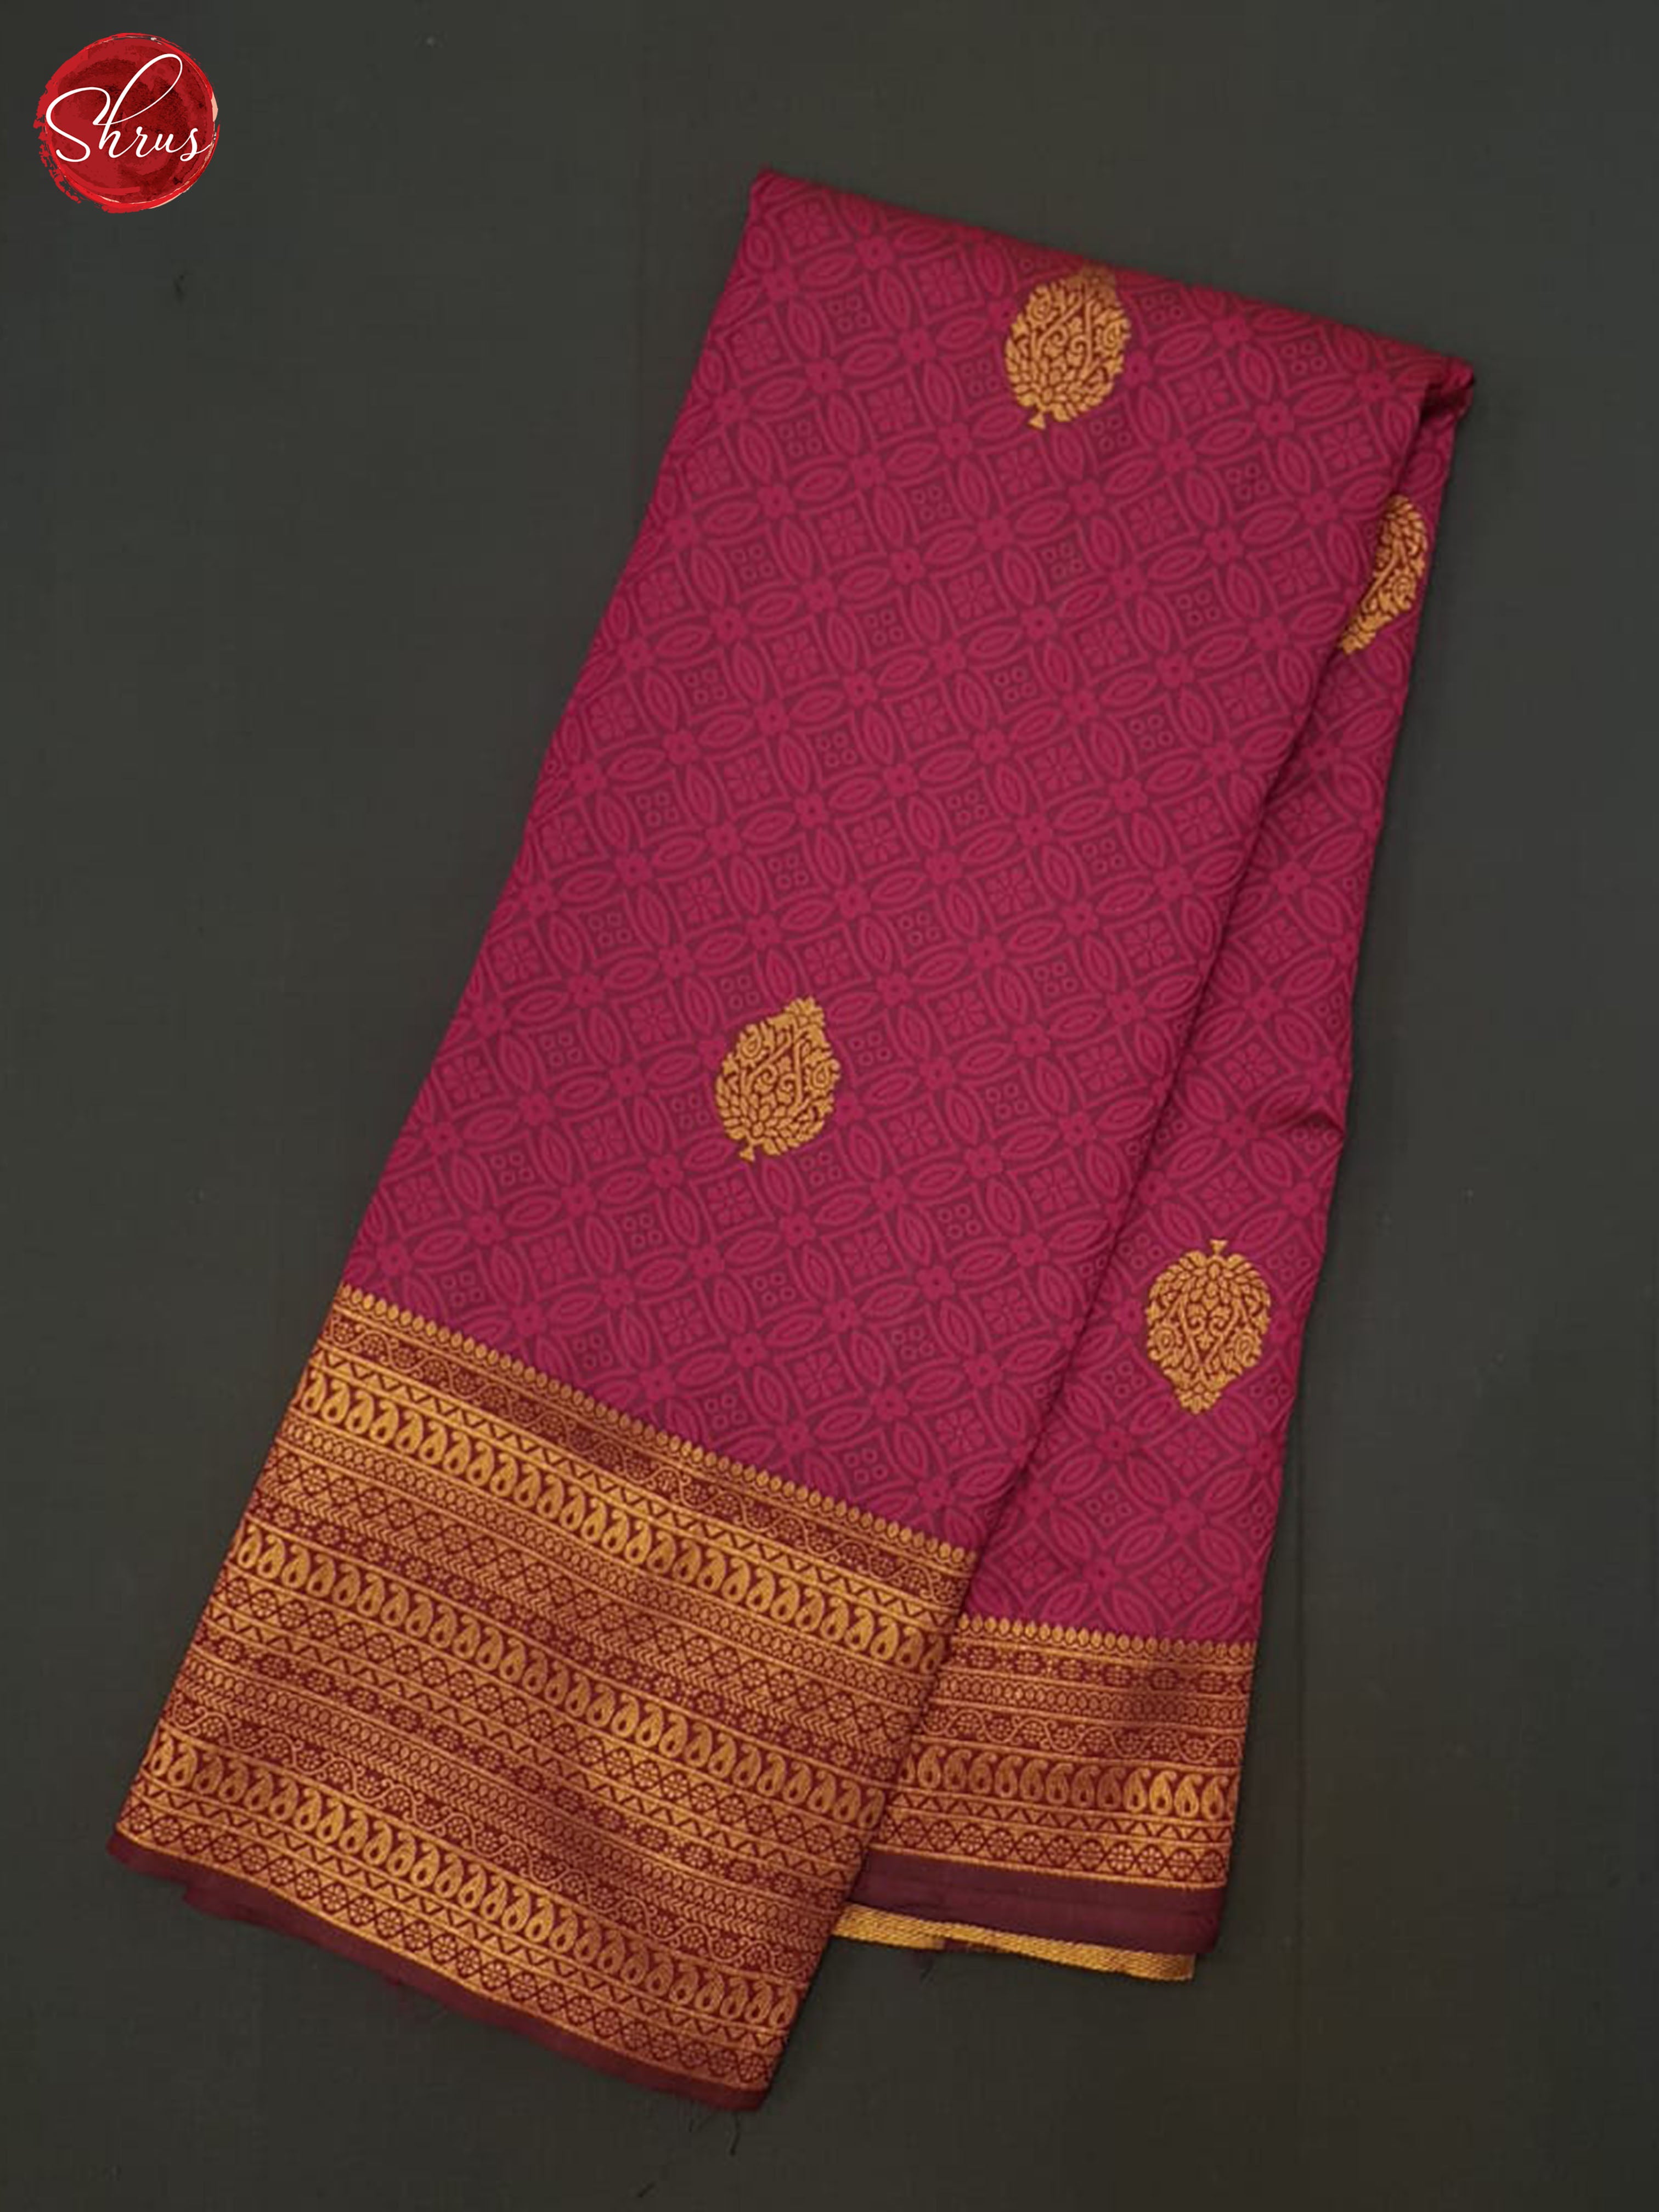 Majenta(Single Tone) - Semi Kanchipuram Saree - Shop on ShrusEternity.com